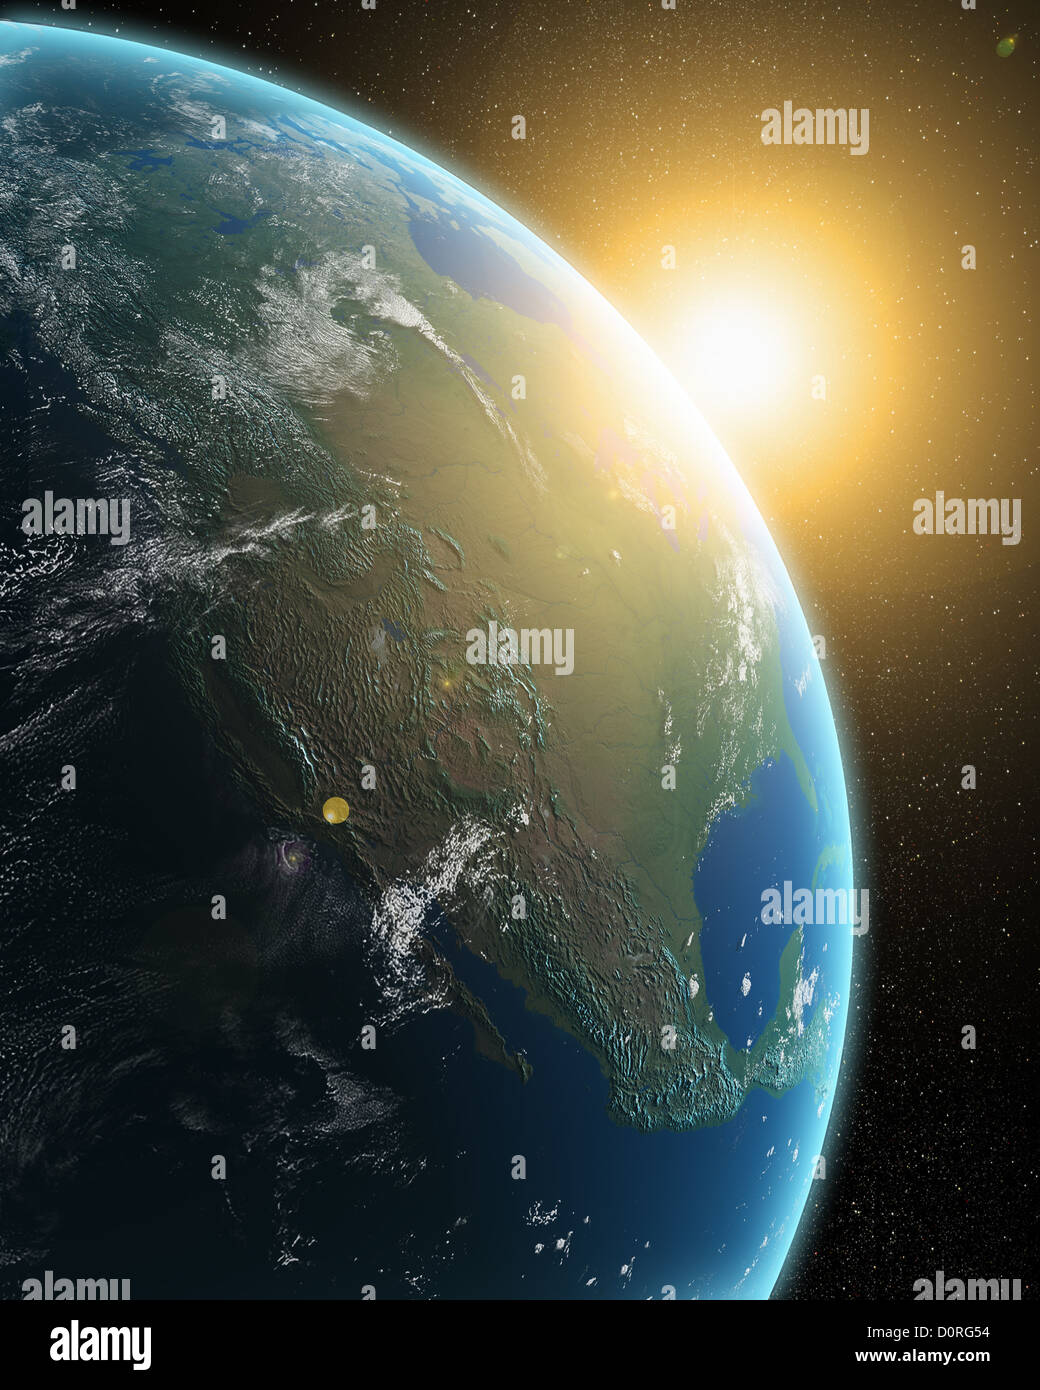 Terra dallo spazio immagini e fotografie stock ad alta risoluzione - Alamy